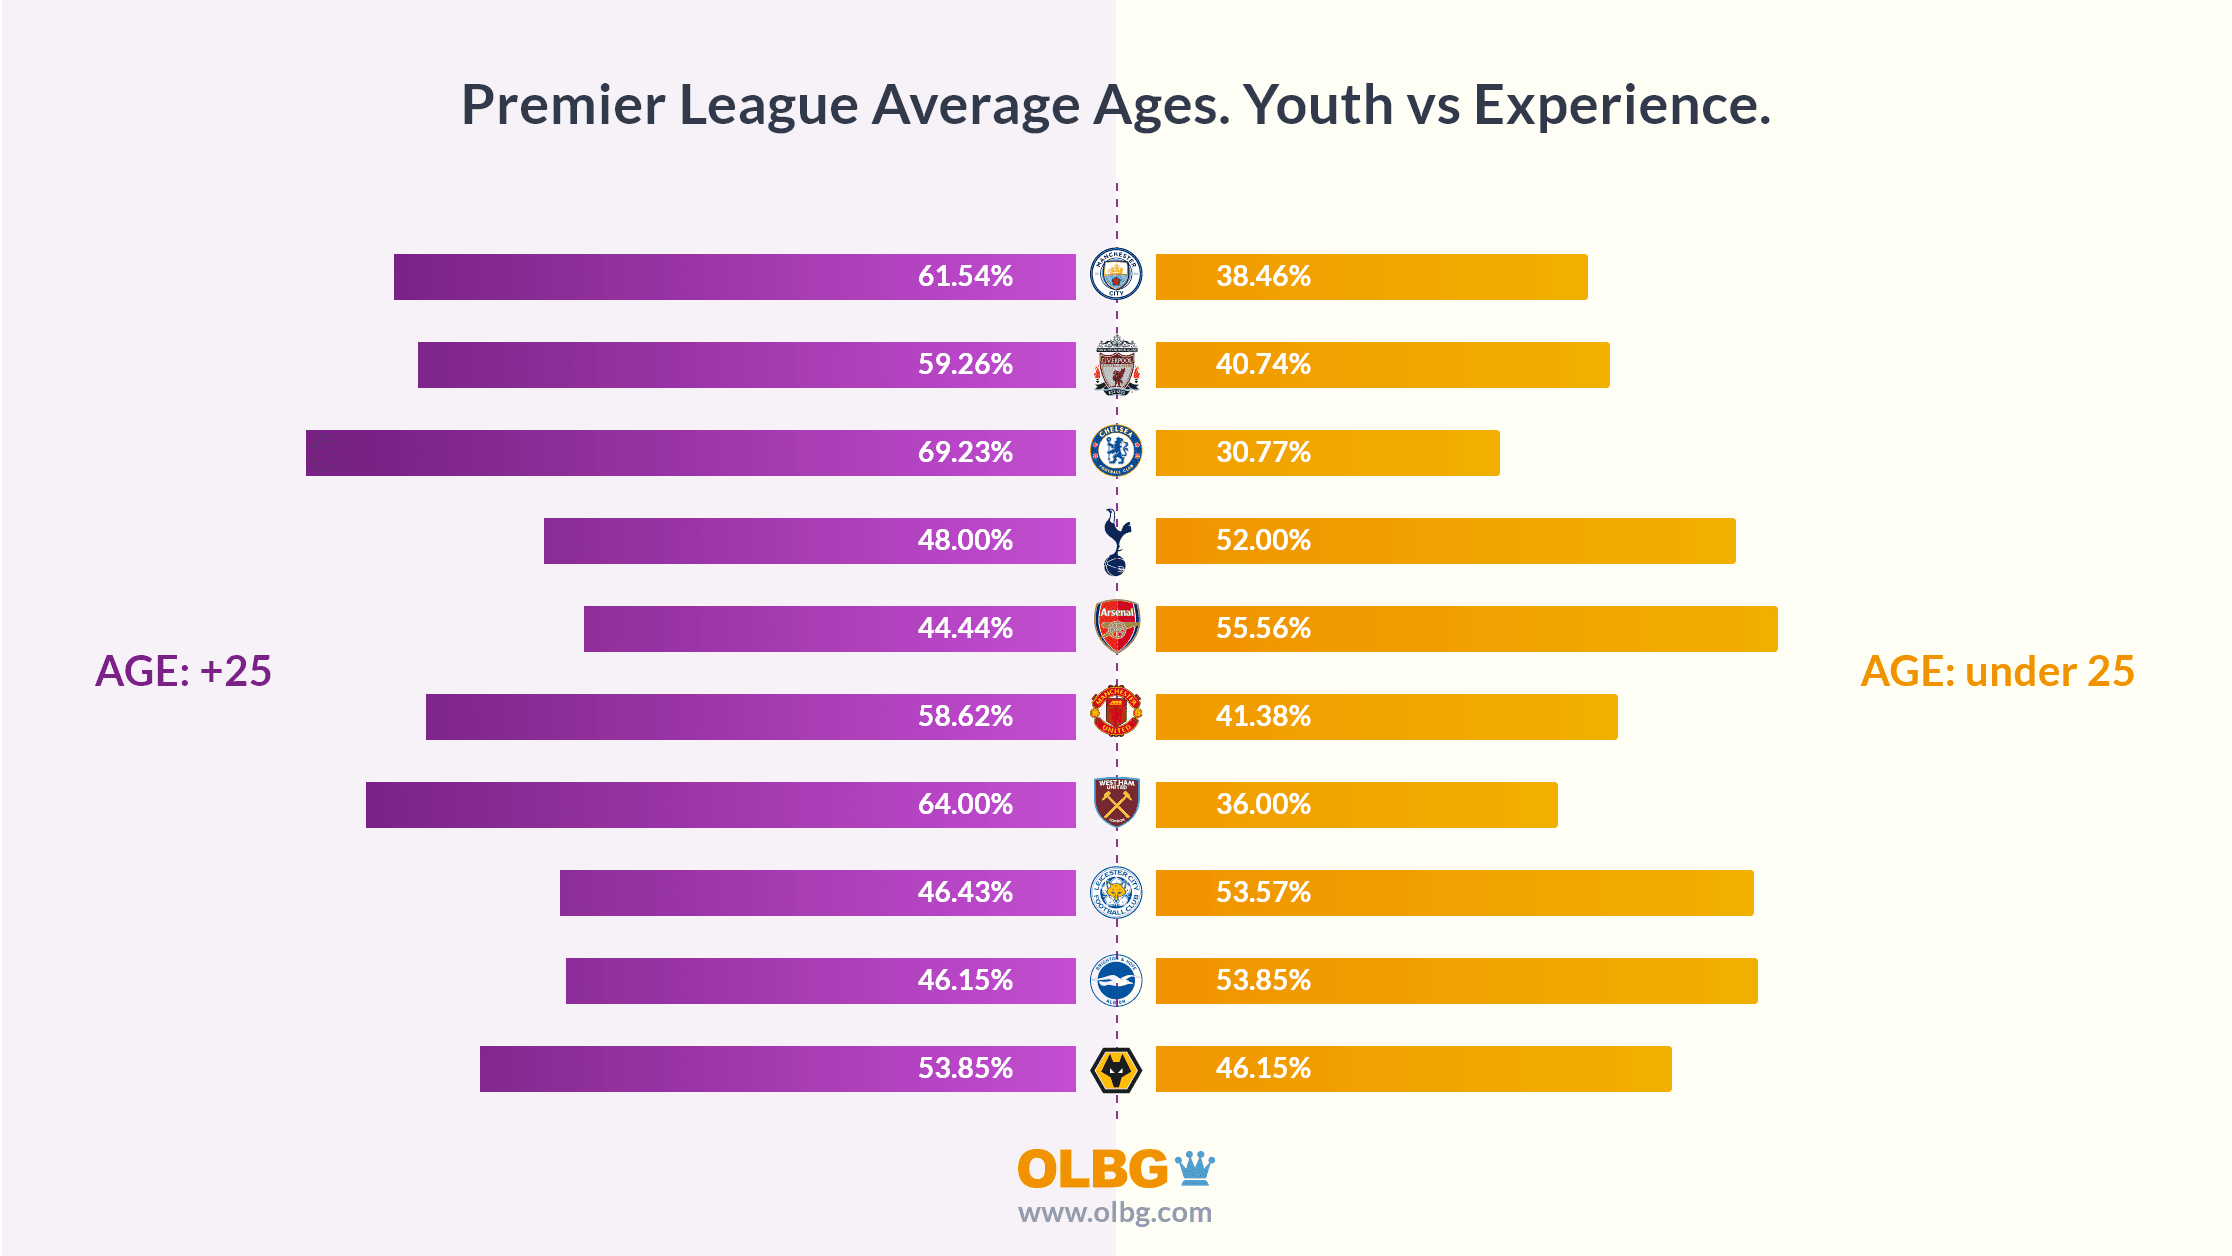 Premier League Average Ages